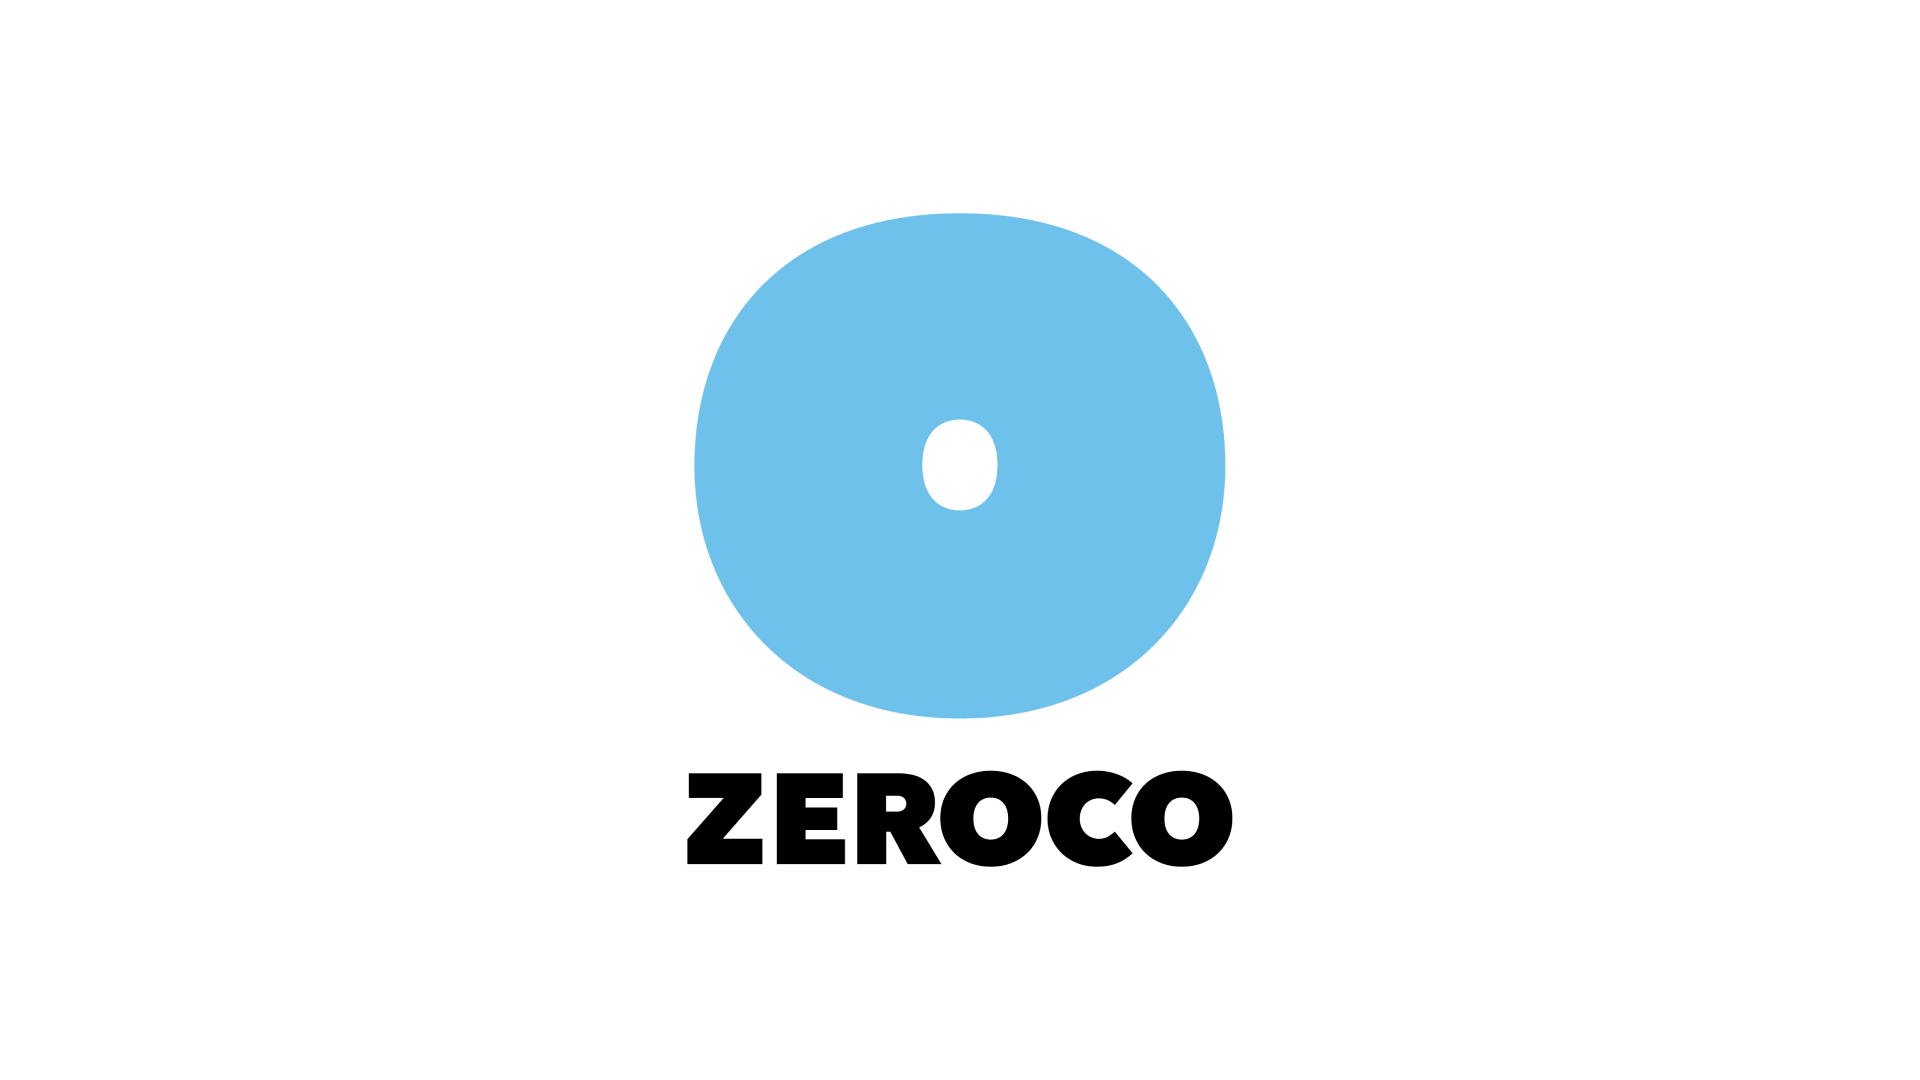 鮮度保持技術「ZEROCO」を開発・提供するZEROCO株式会社、資金調達を実施